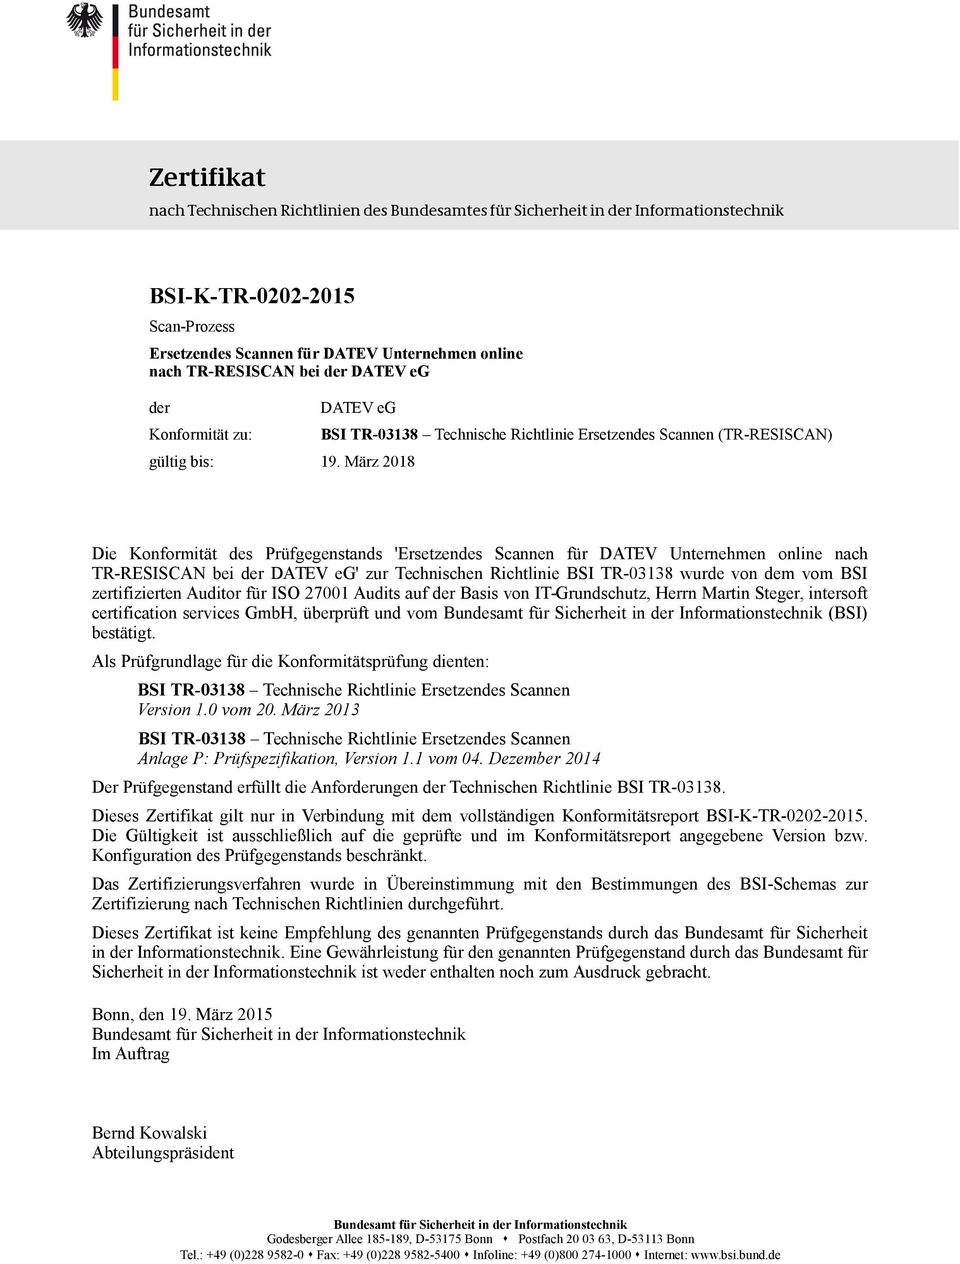 März 2018 BSI TR-03138 Technische Richtlinie Ersetzendes Scannen (TR-RESISCAN) Die Konformität des Prüfgegenstands 'Ersetzendes Scannen für DATEV Unternehmen online nach TR-RESISCAN bei der DATEV eg'